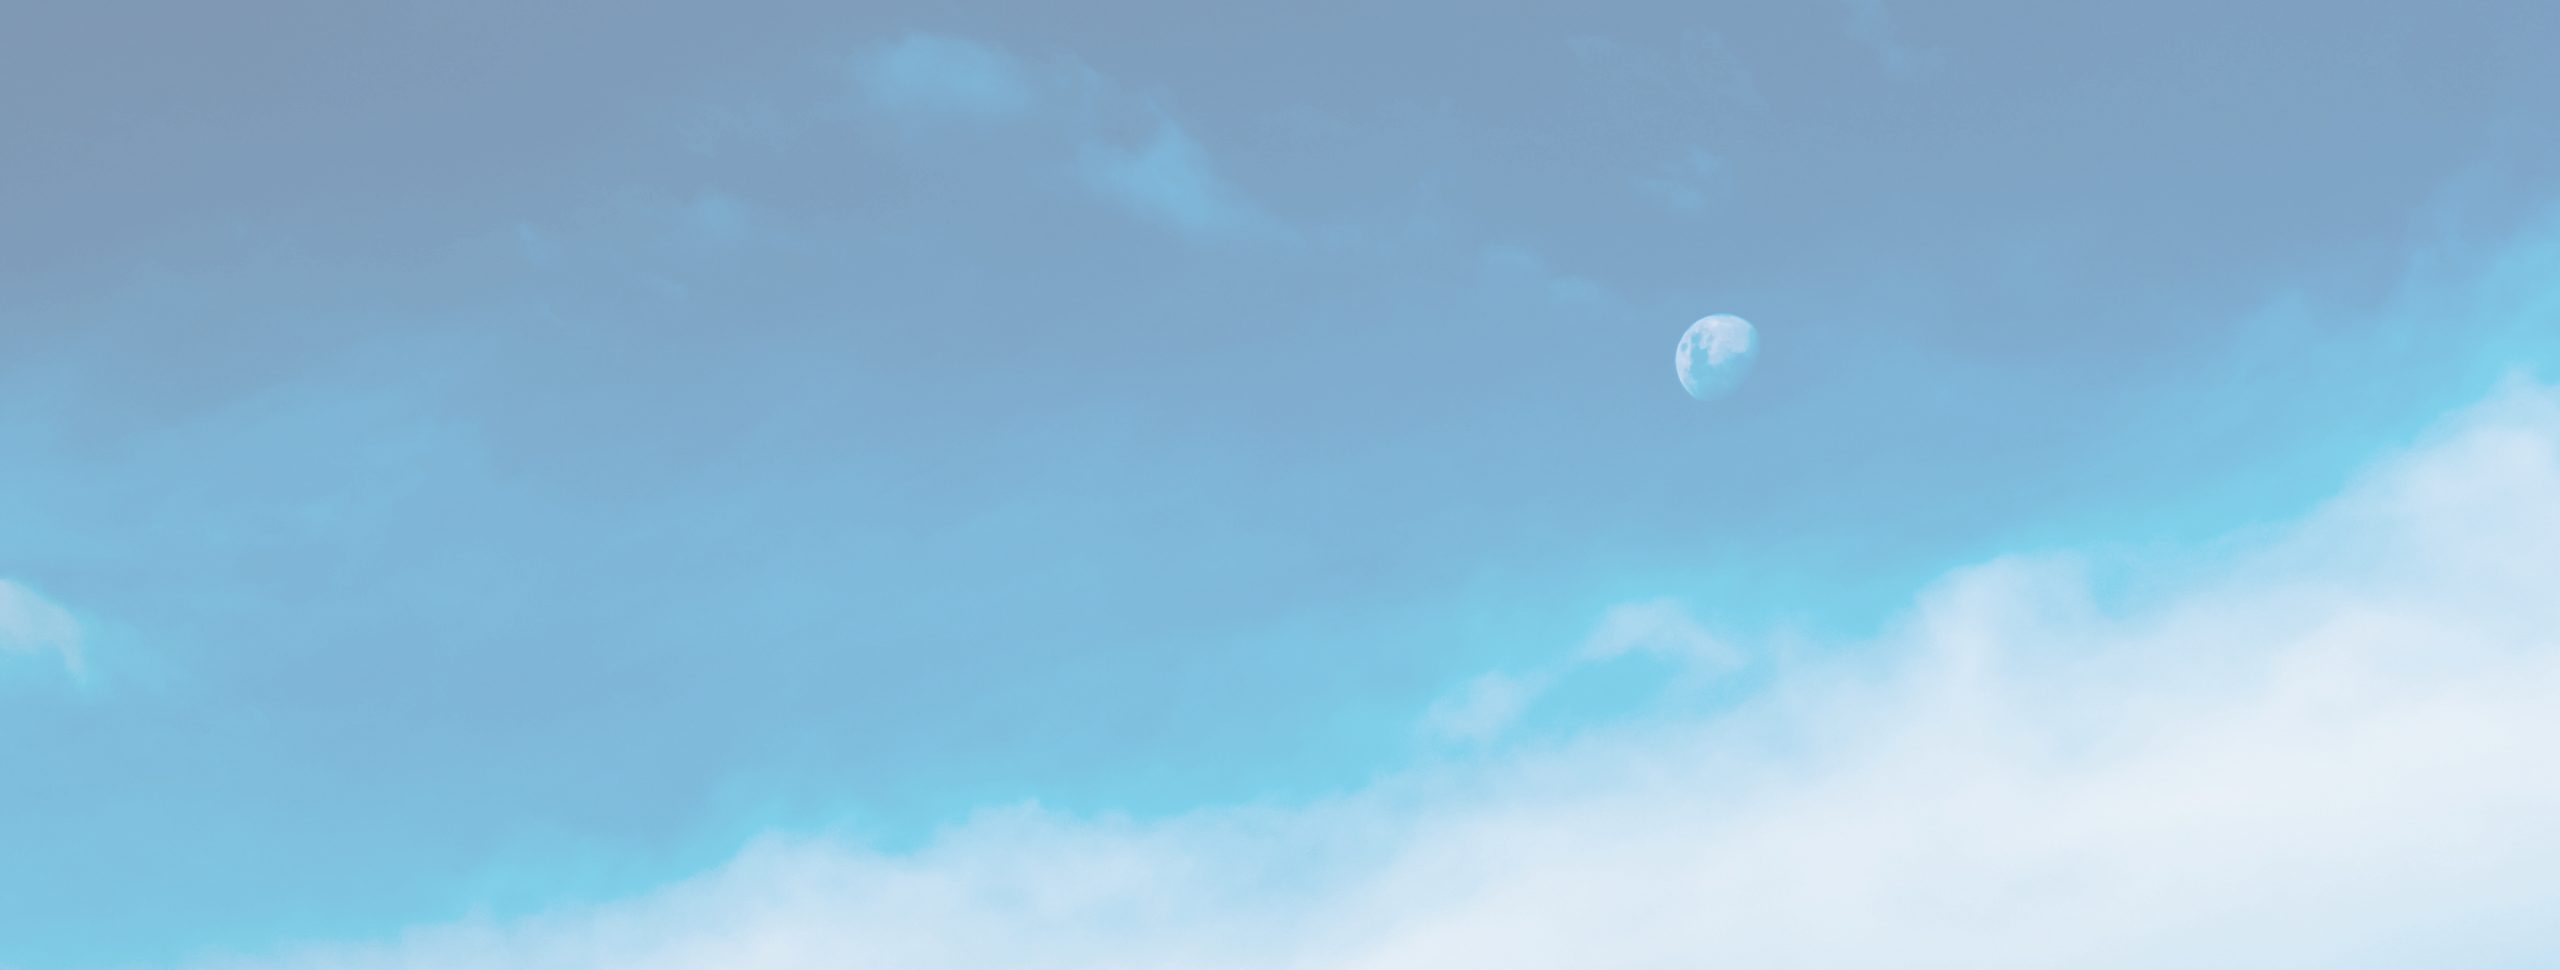 ciel bleu nuageux laissant deviner la lune en train de se lever